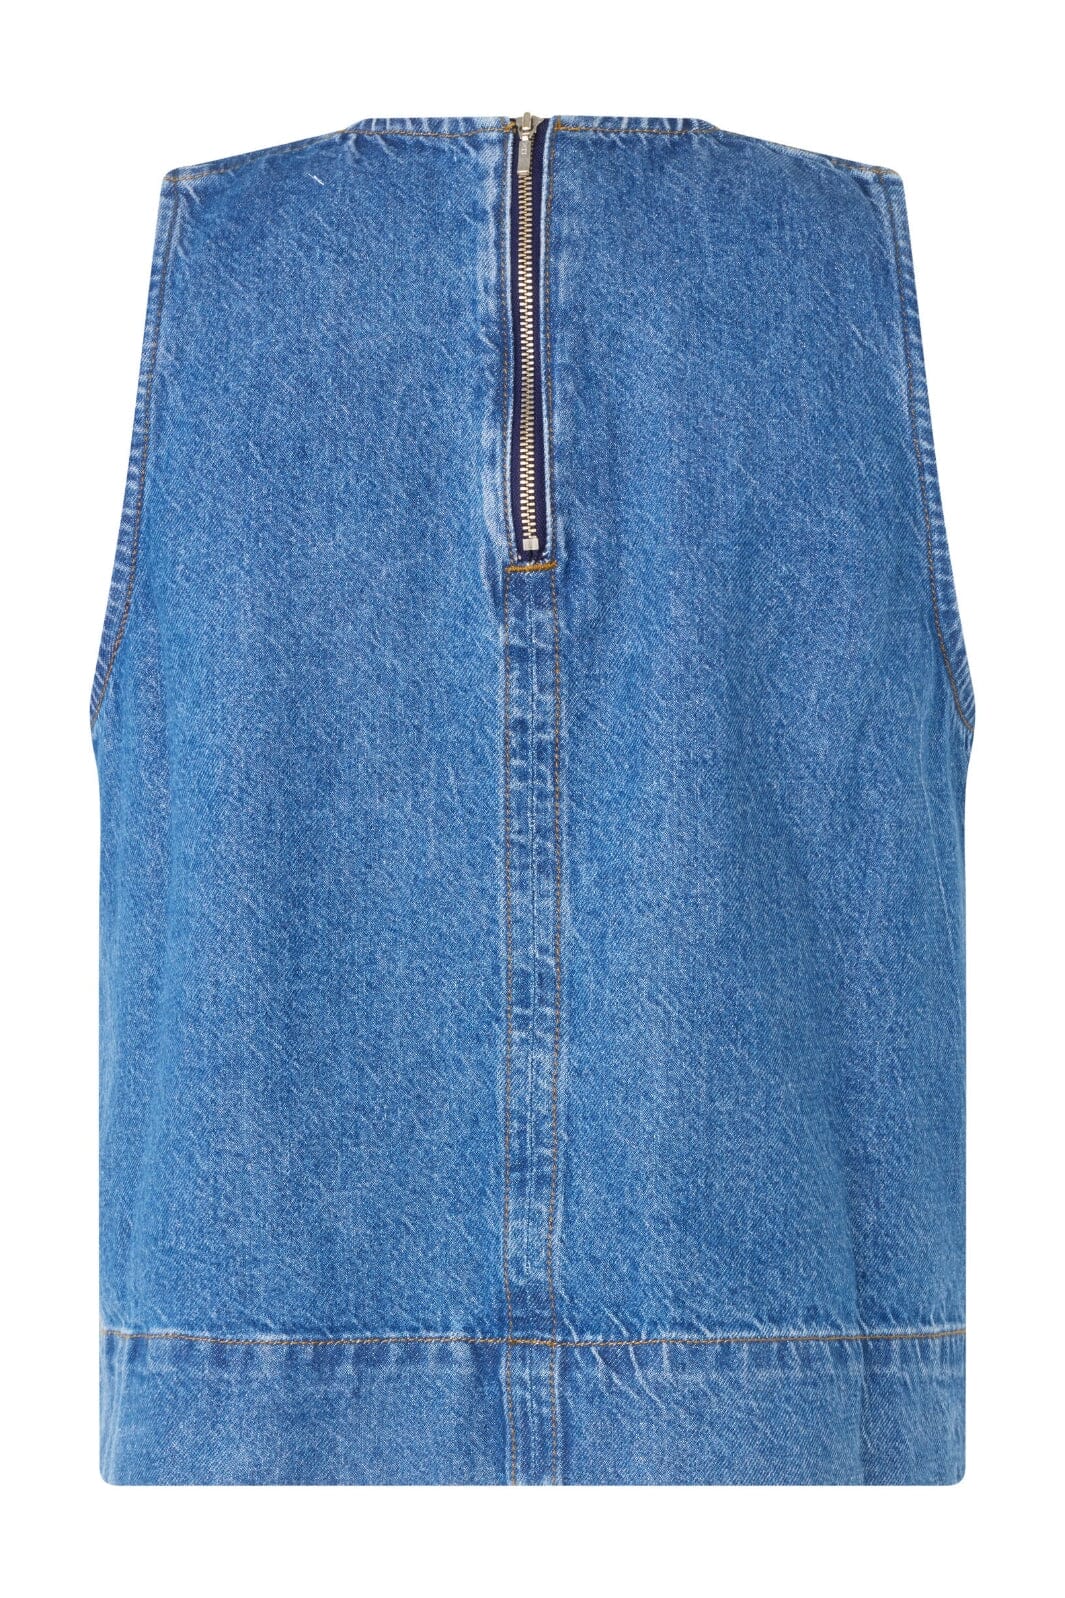 Global Funk - Rihne-G - P32 Vintage Blue Wash Skjorter 